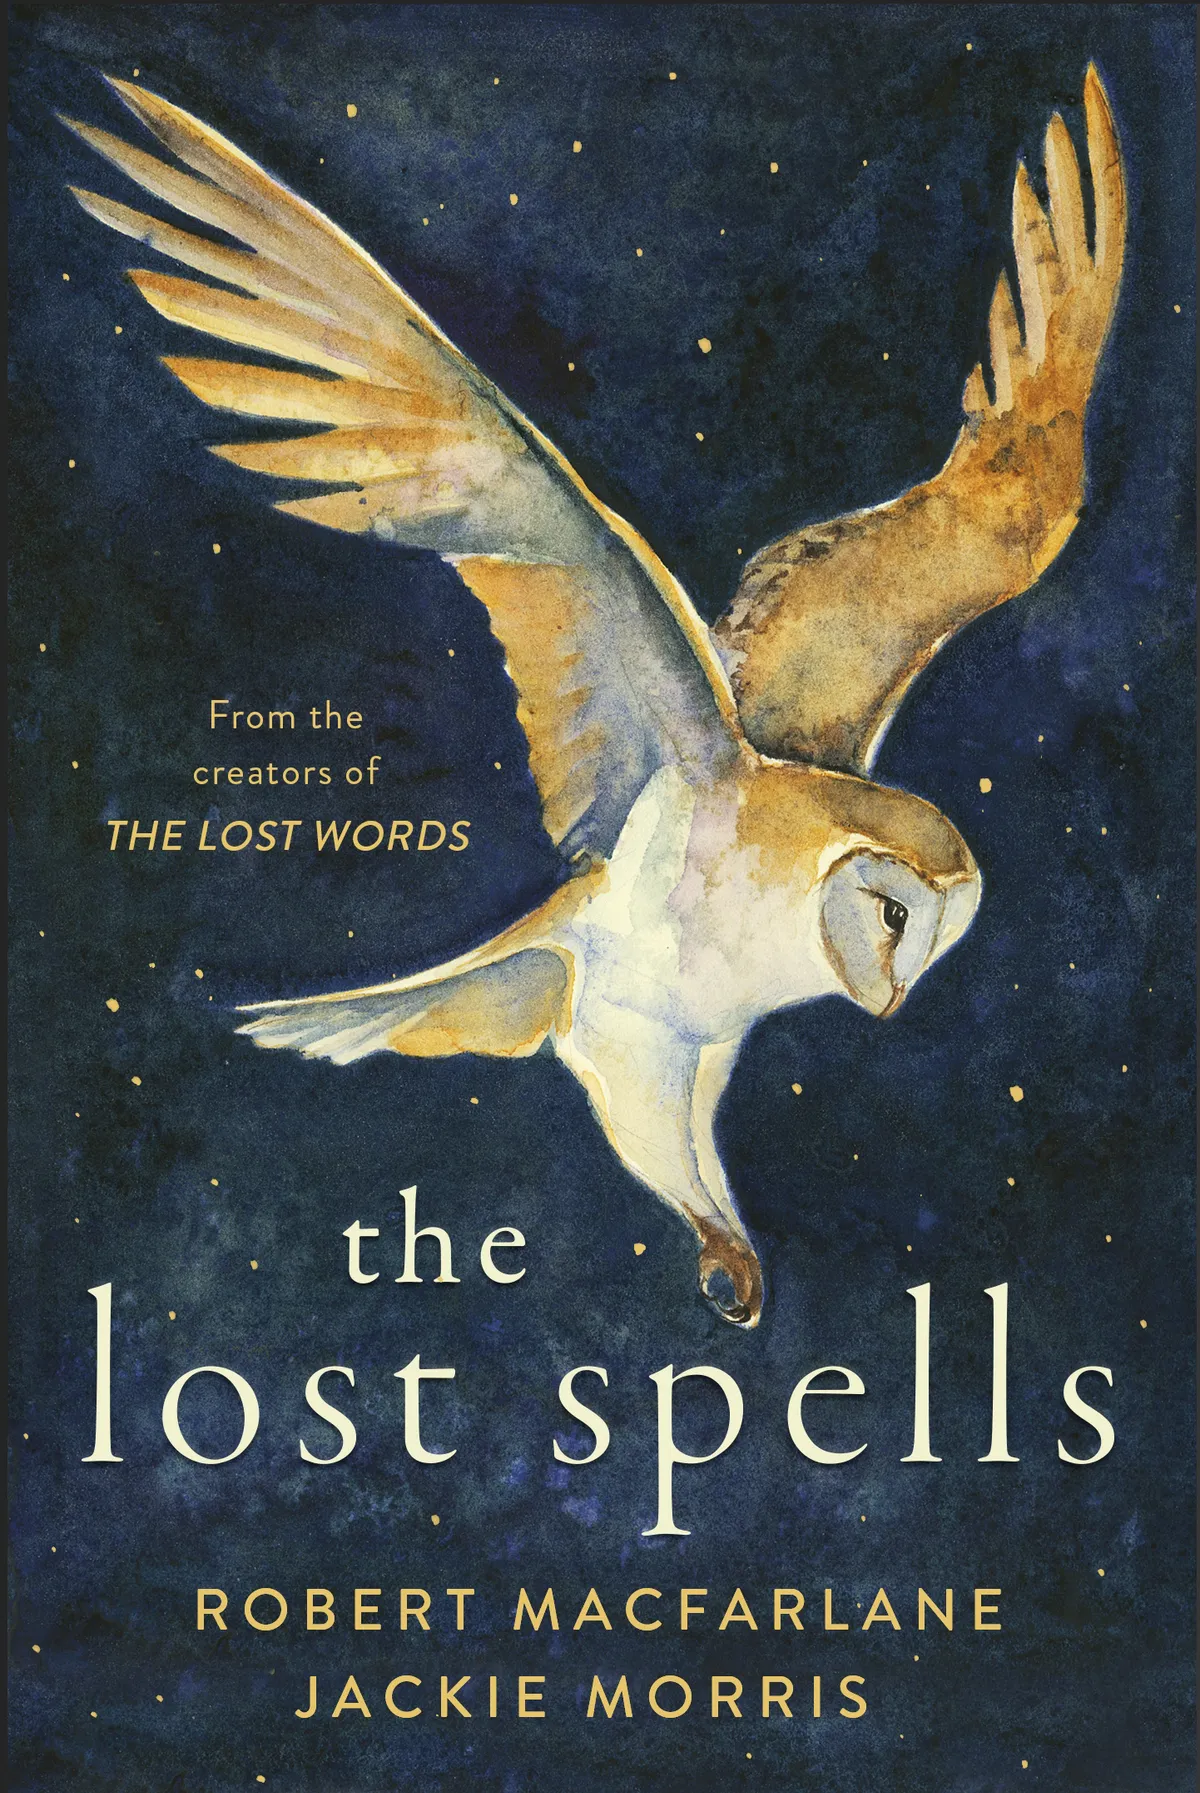 The Lost Spells by Robert McFarlane and Jackie Morris